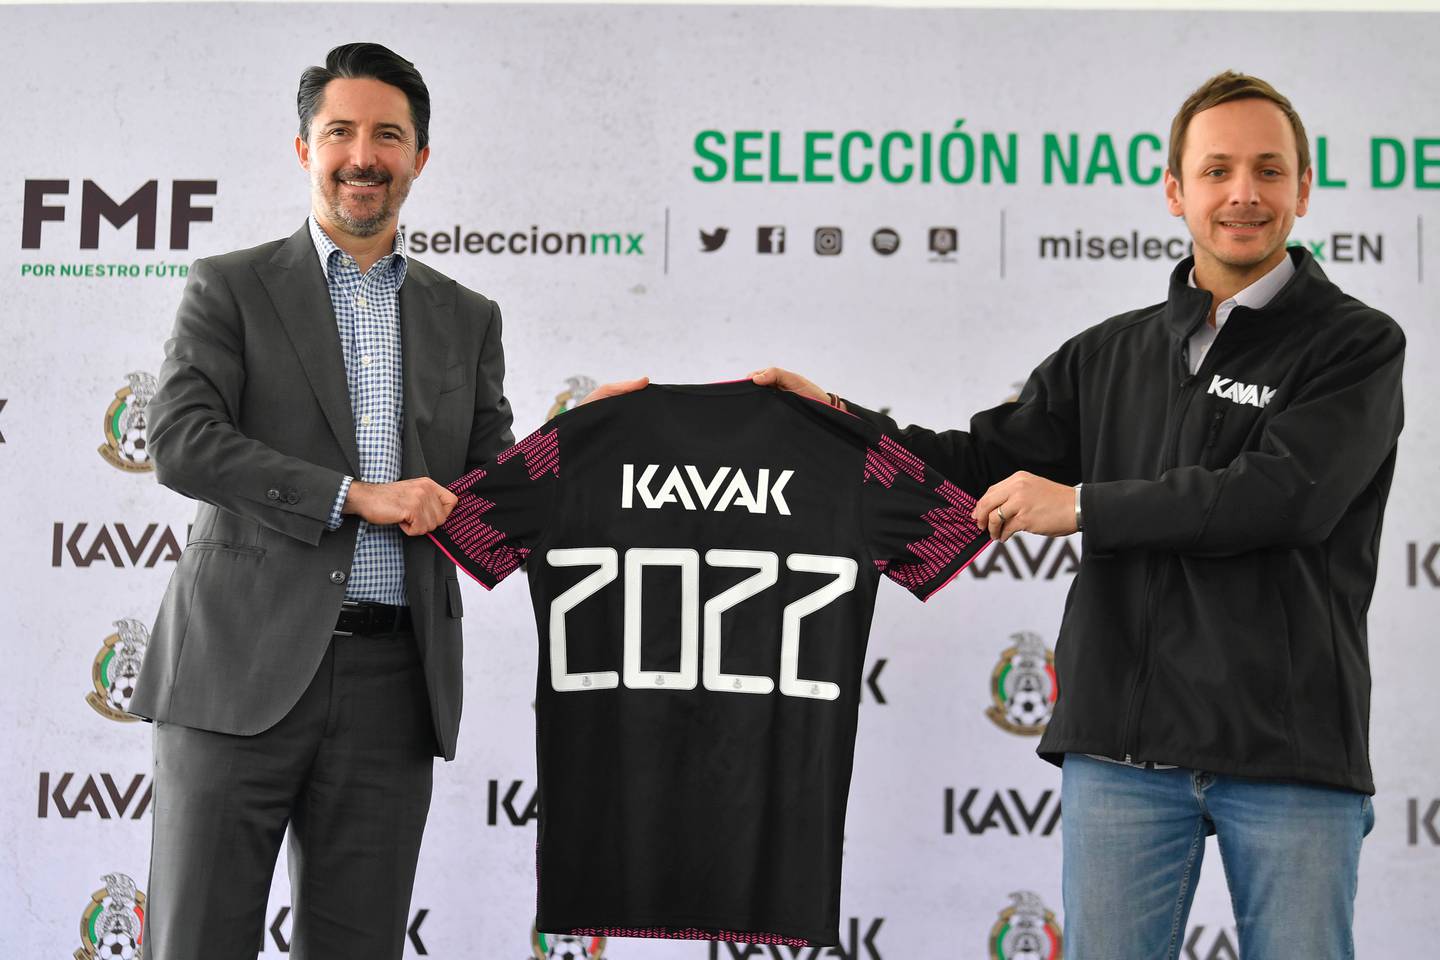 Unicornios como Kavak, Bitso, Nubank y otros en México y América Latina comienzan a inundar playeras, cascos y estadios con su logo.